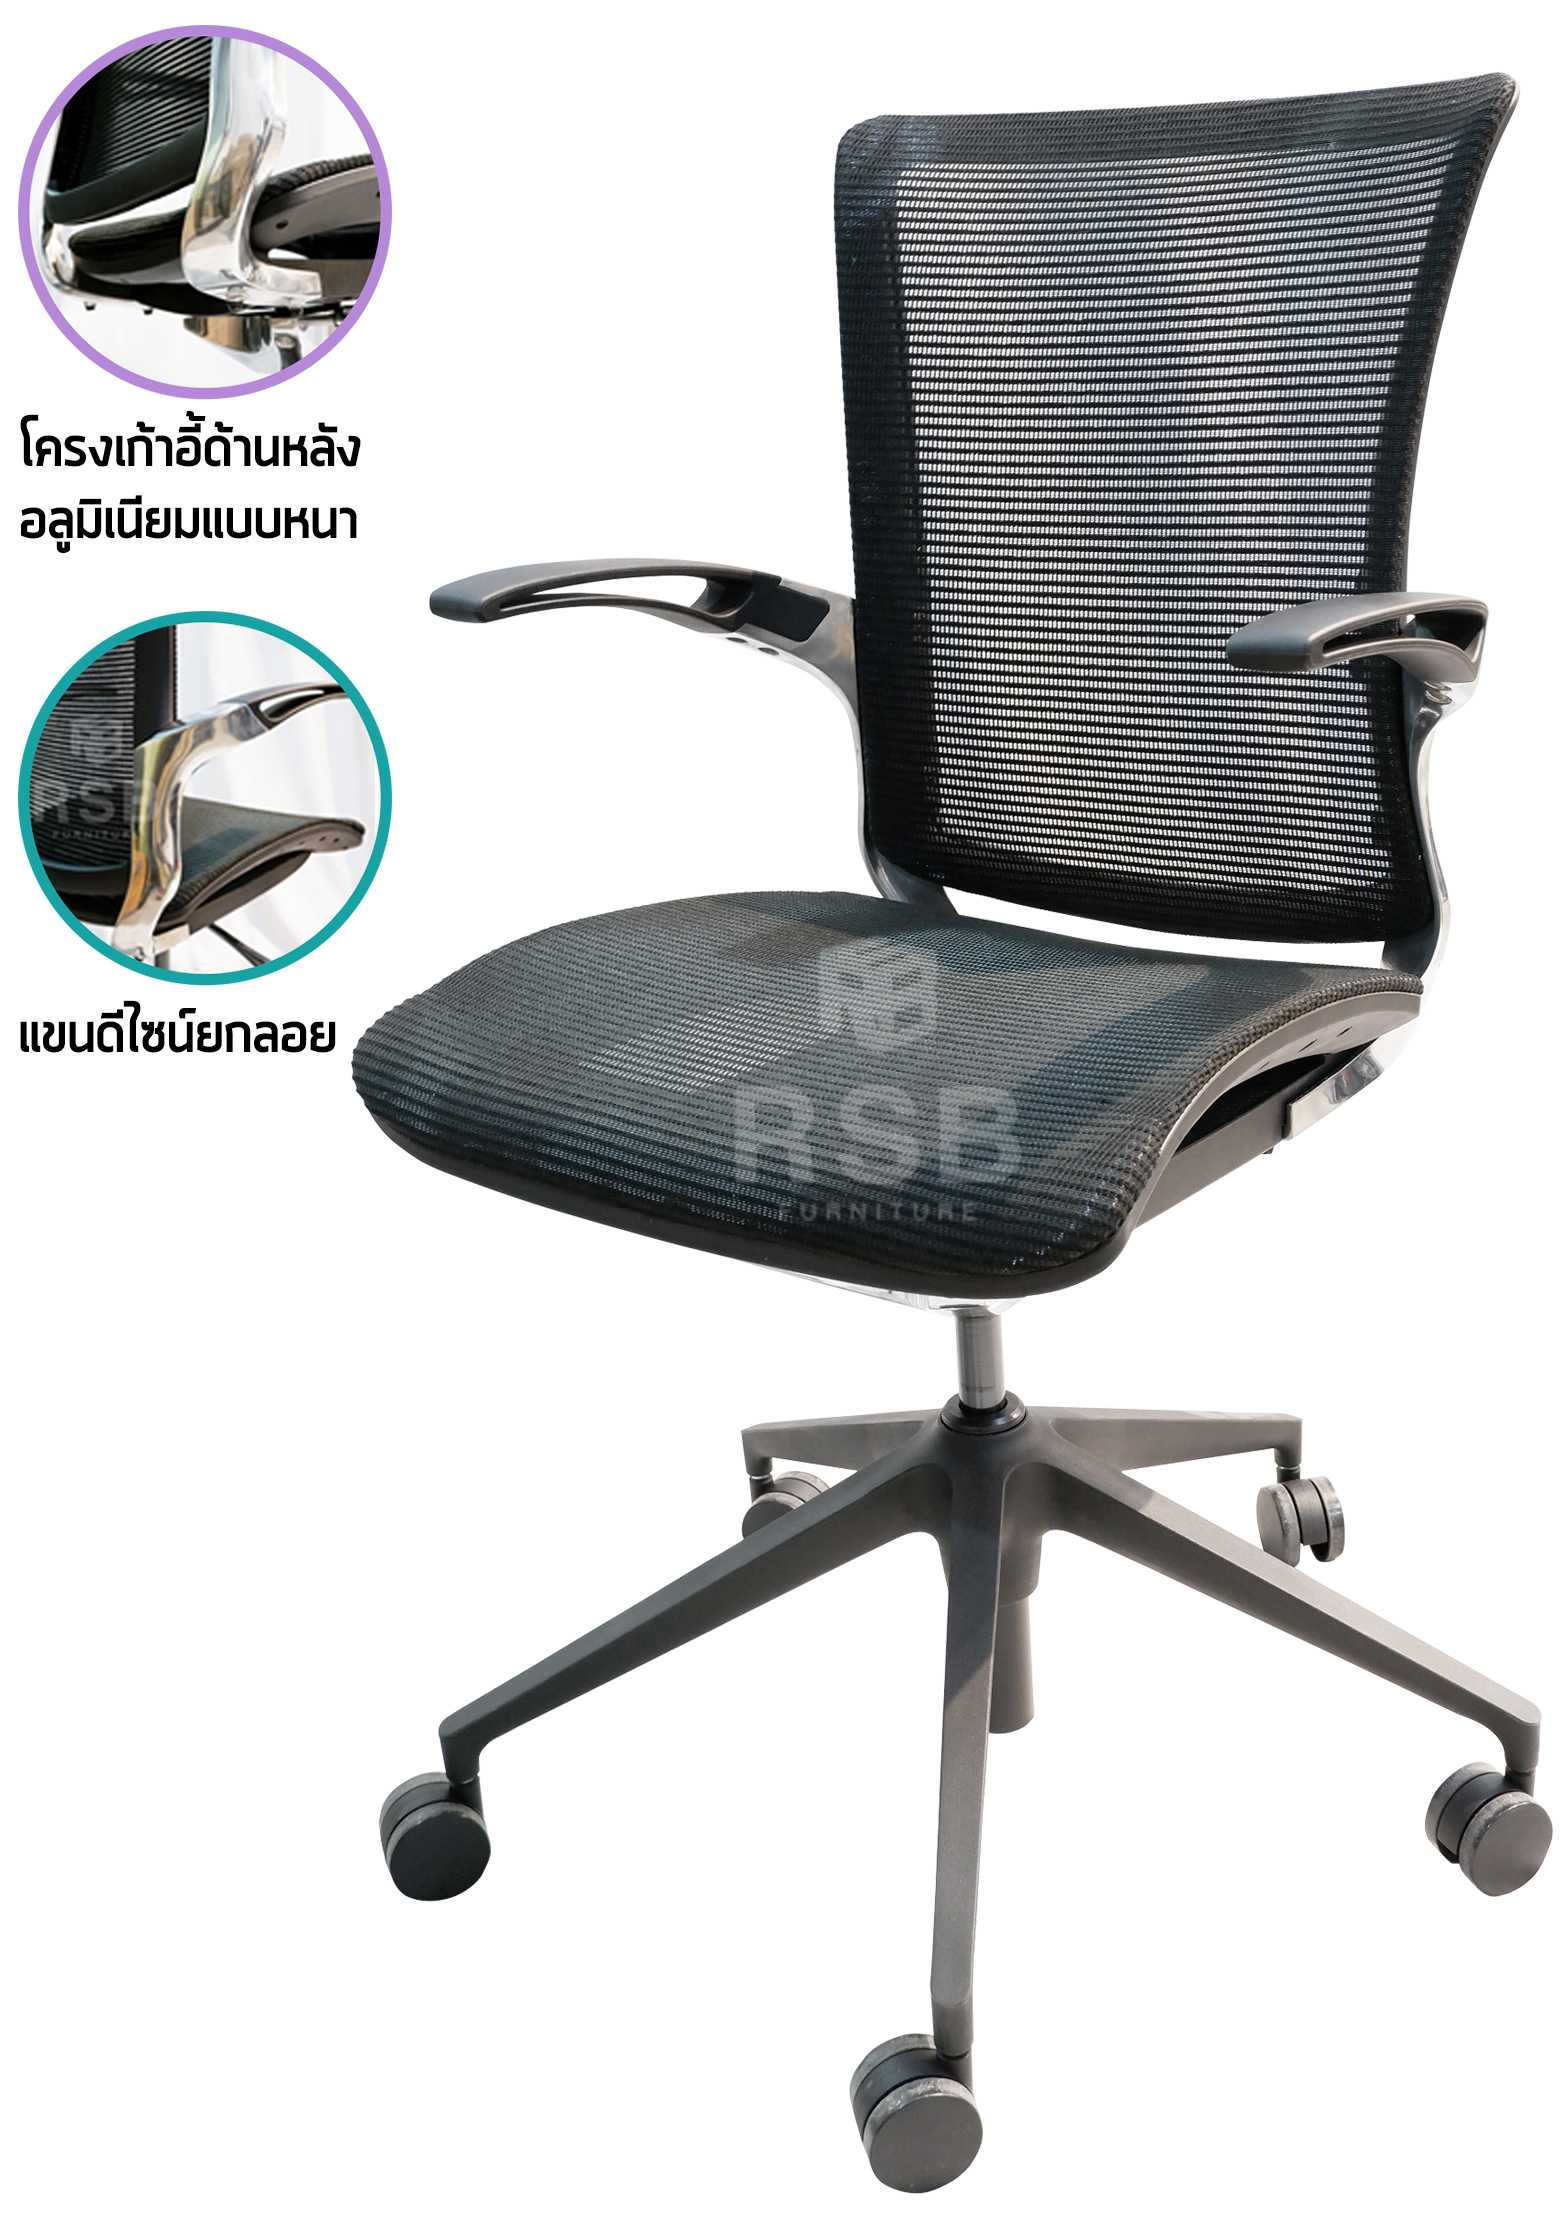 เก้าอี้สำนักงาน unique designed โครงแขน อลูมิเนียม รหัส 4324